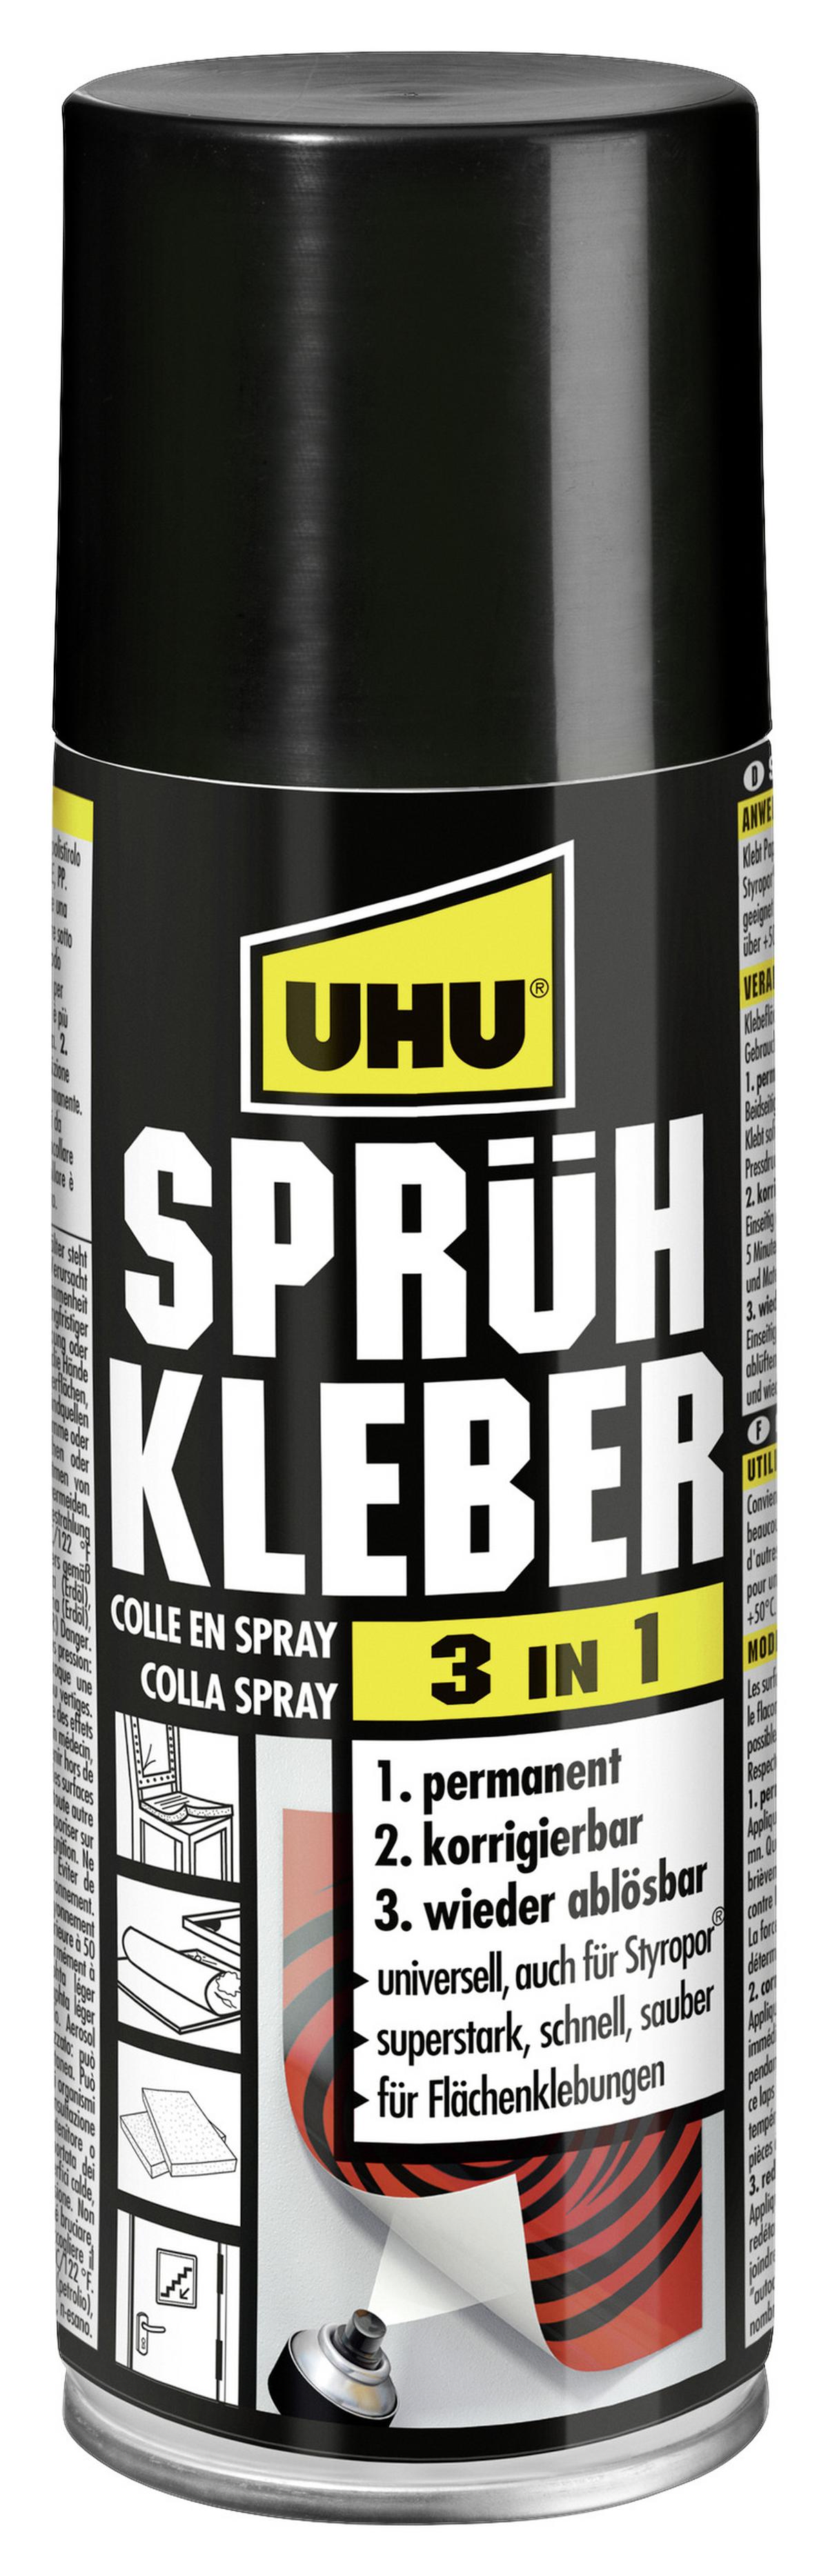 UHU Klebstoffentferner Spray 200 ml kaufen